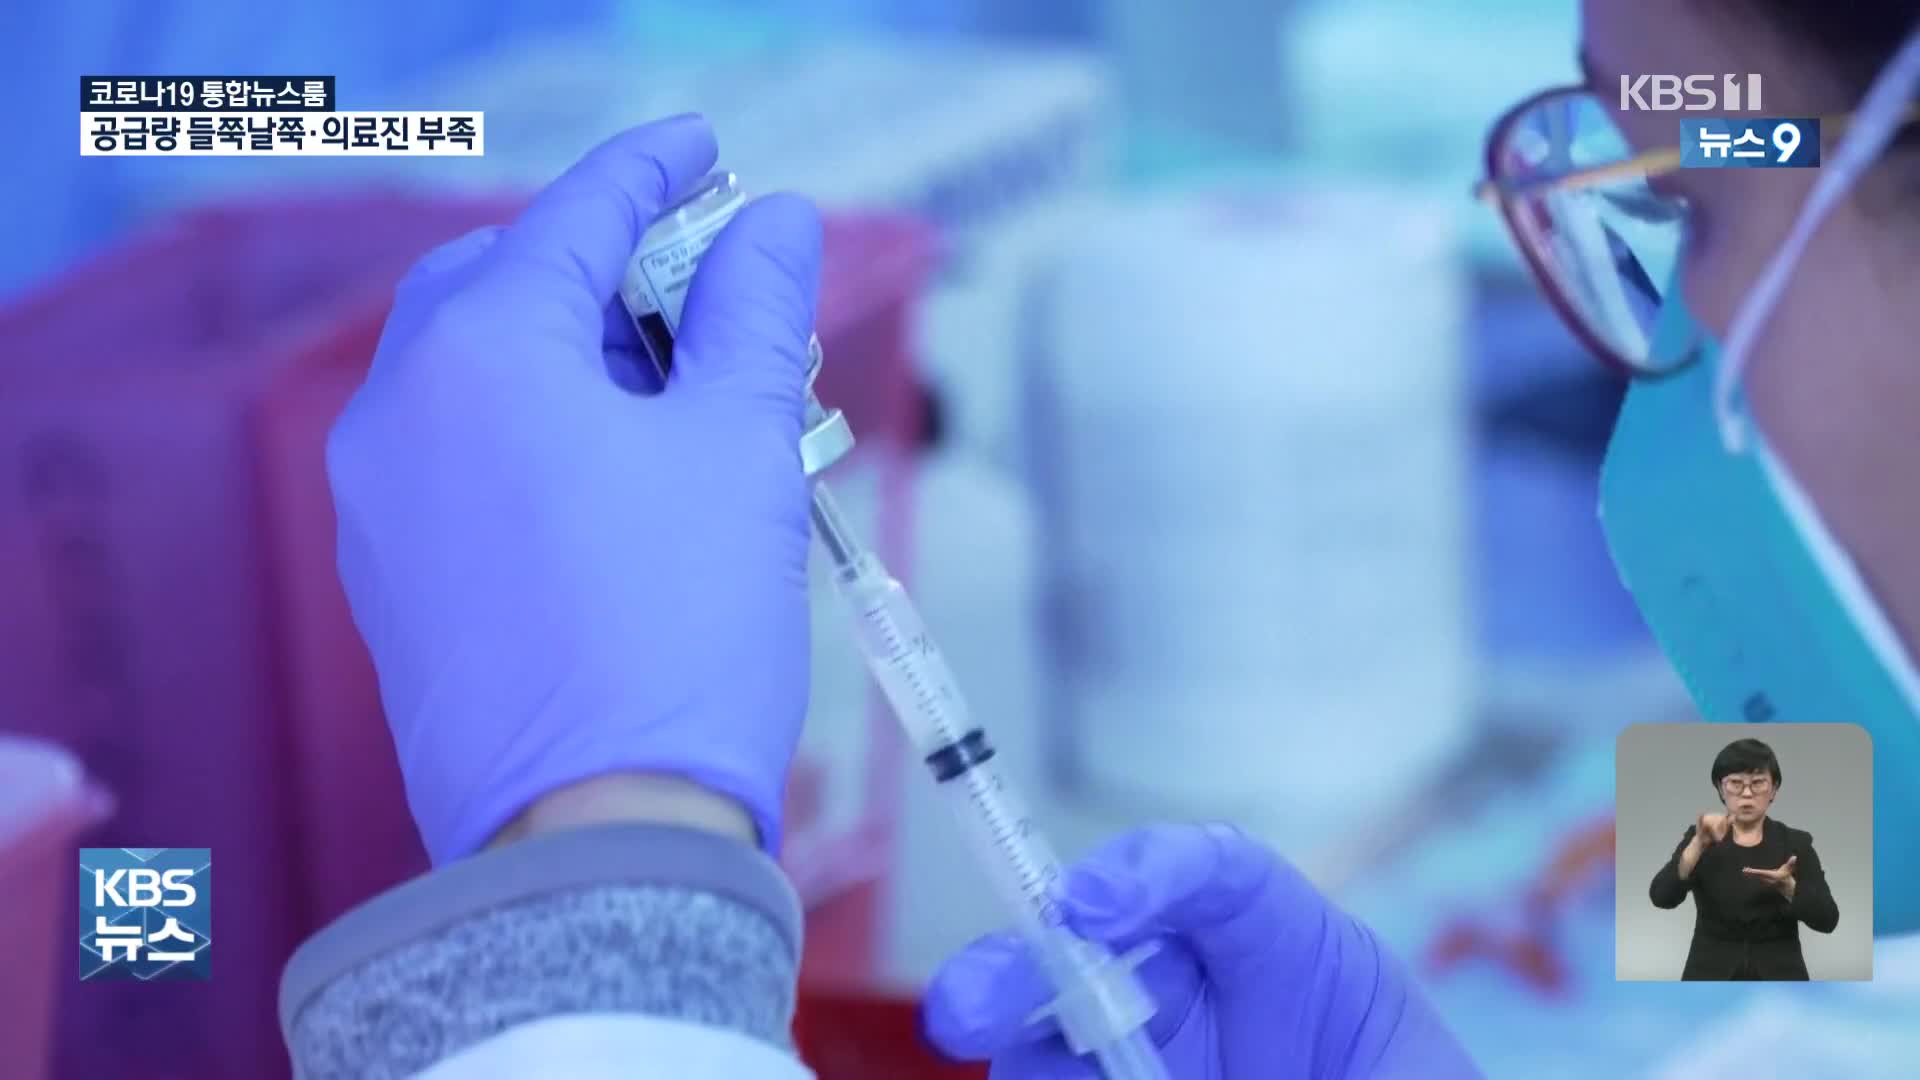 美 열흘 새 천만 명 백신 접종 속도…WHO “임산부는 자제”